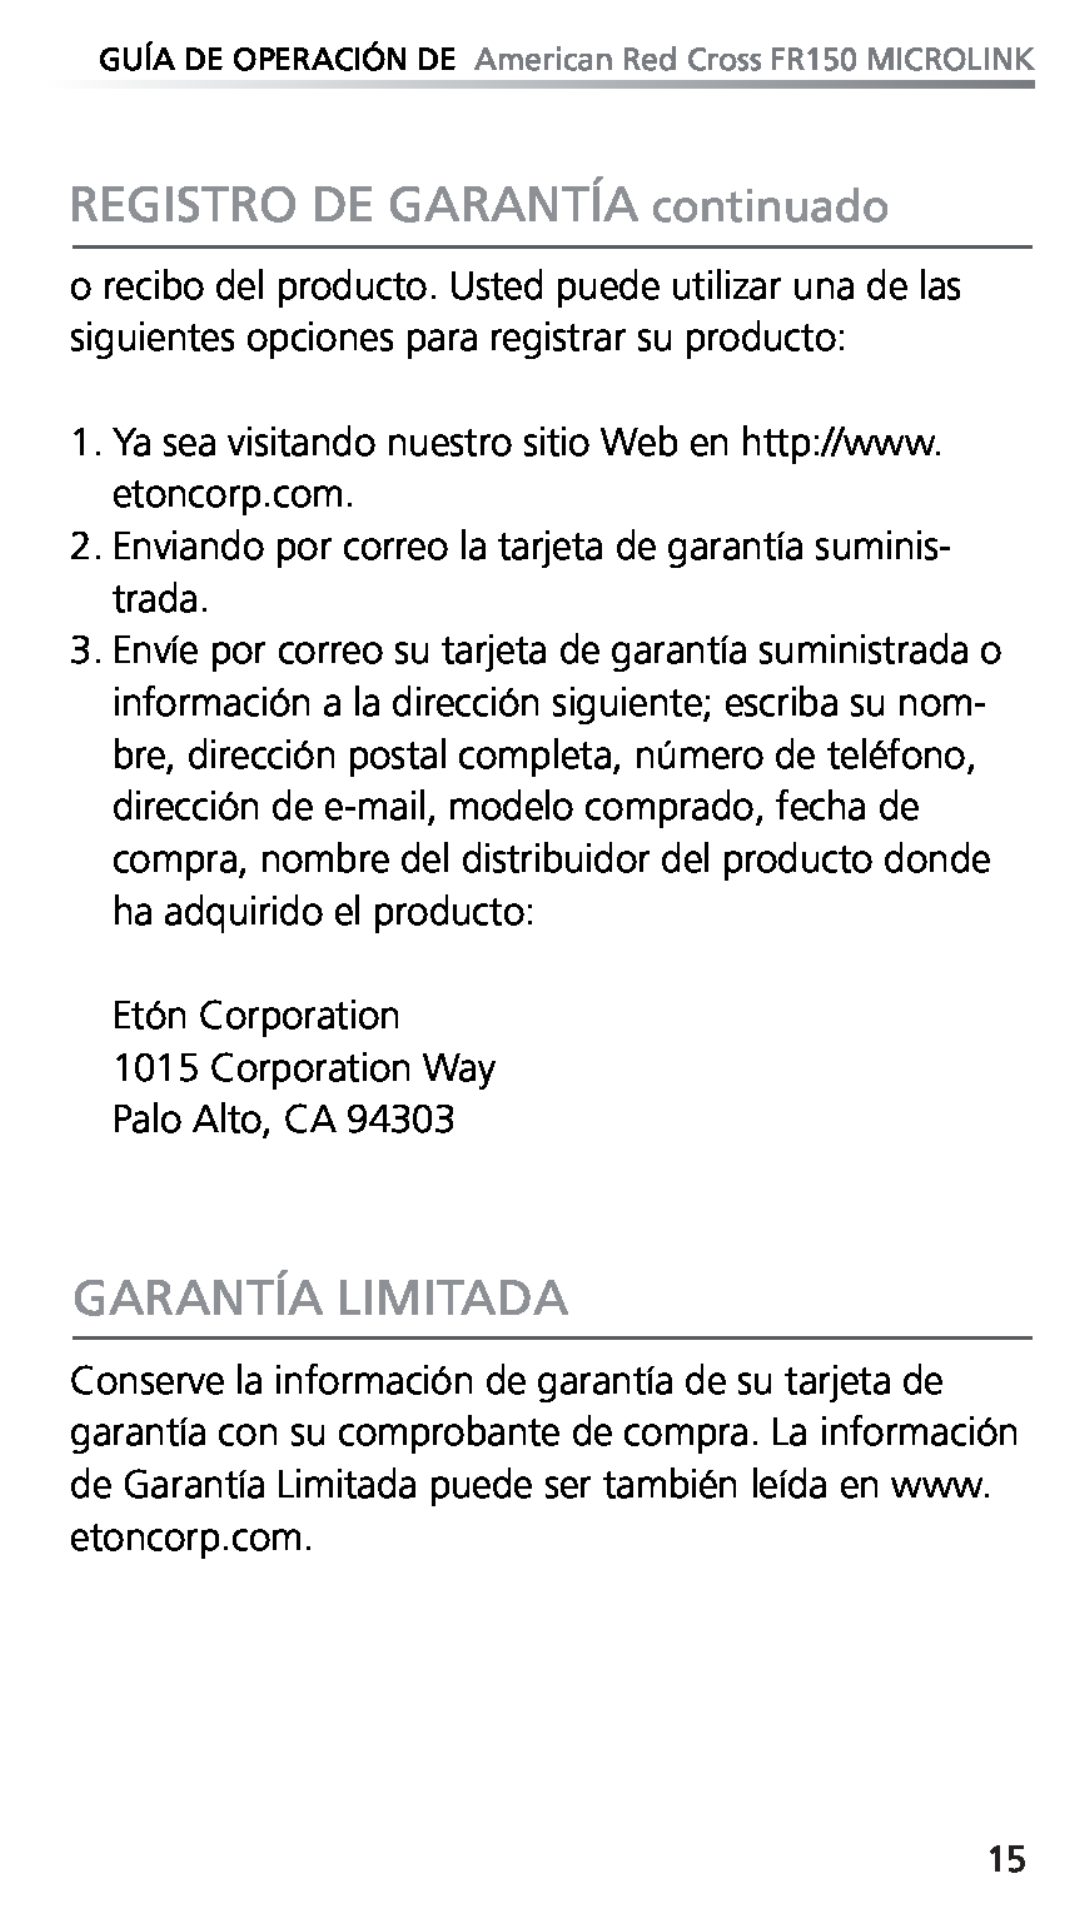 Eton FR150 owner manual REGISTRO DE GARANTÍA continuado, Garantía Limitada 